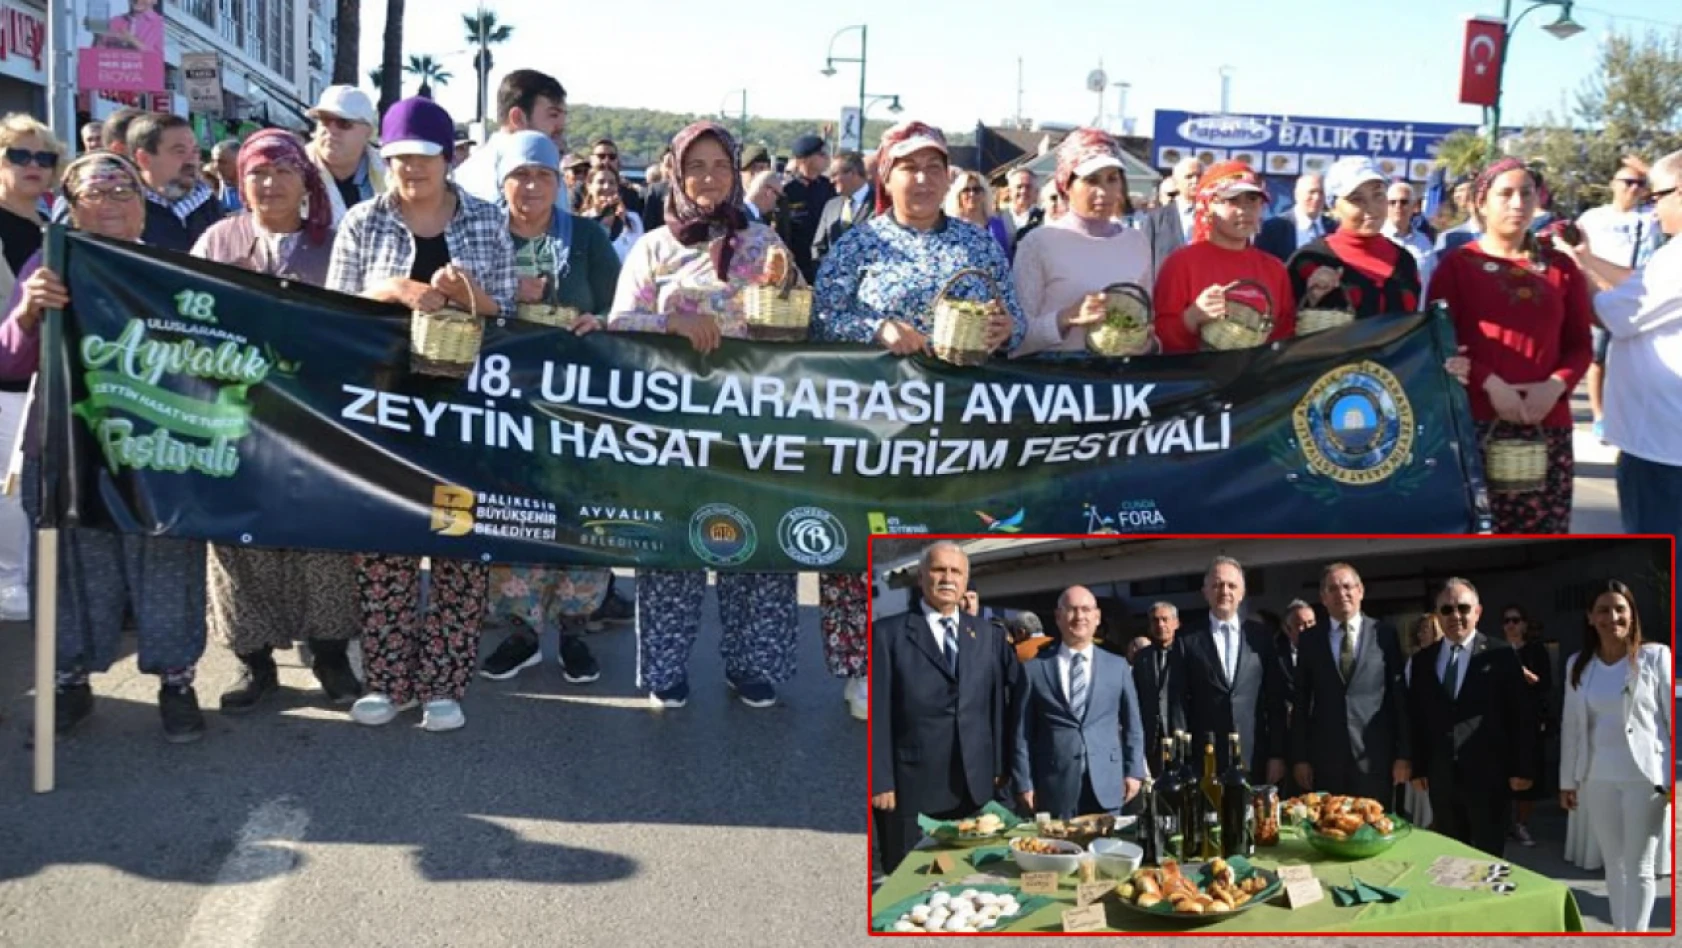 18. Uluslararası Ayvalık Zeytin Hasat ve Turizm Festivali başladı